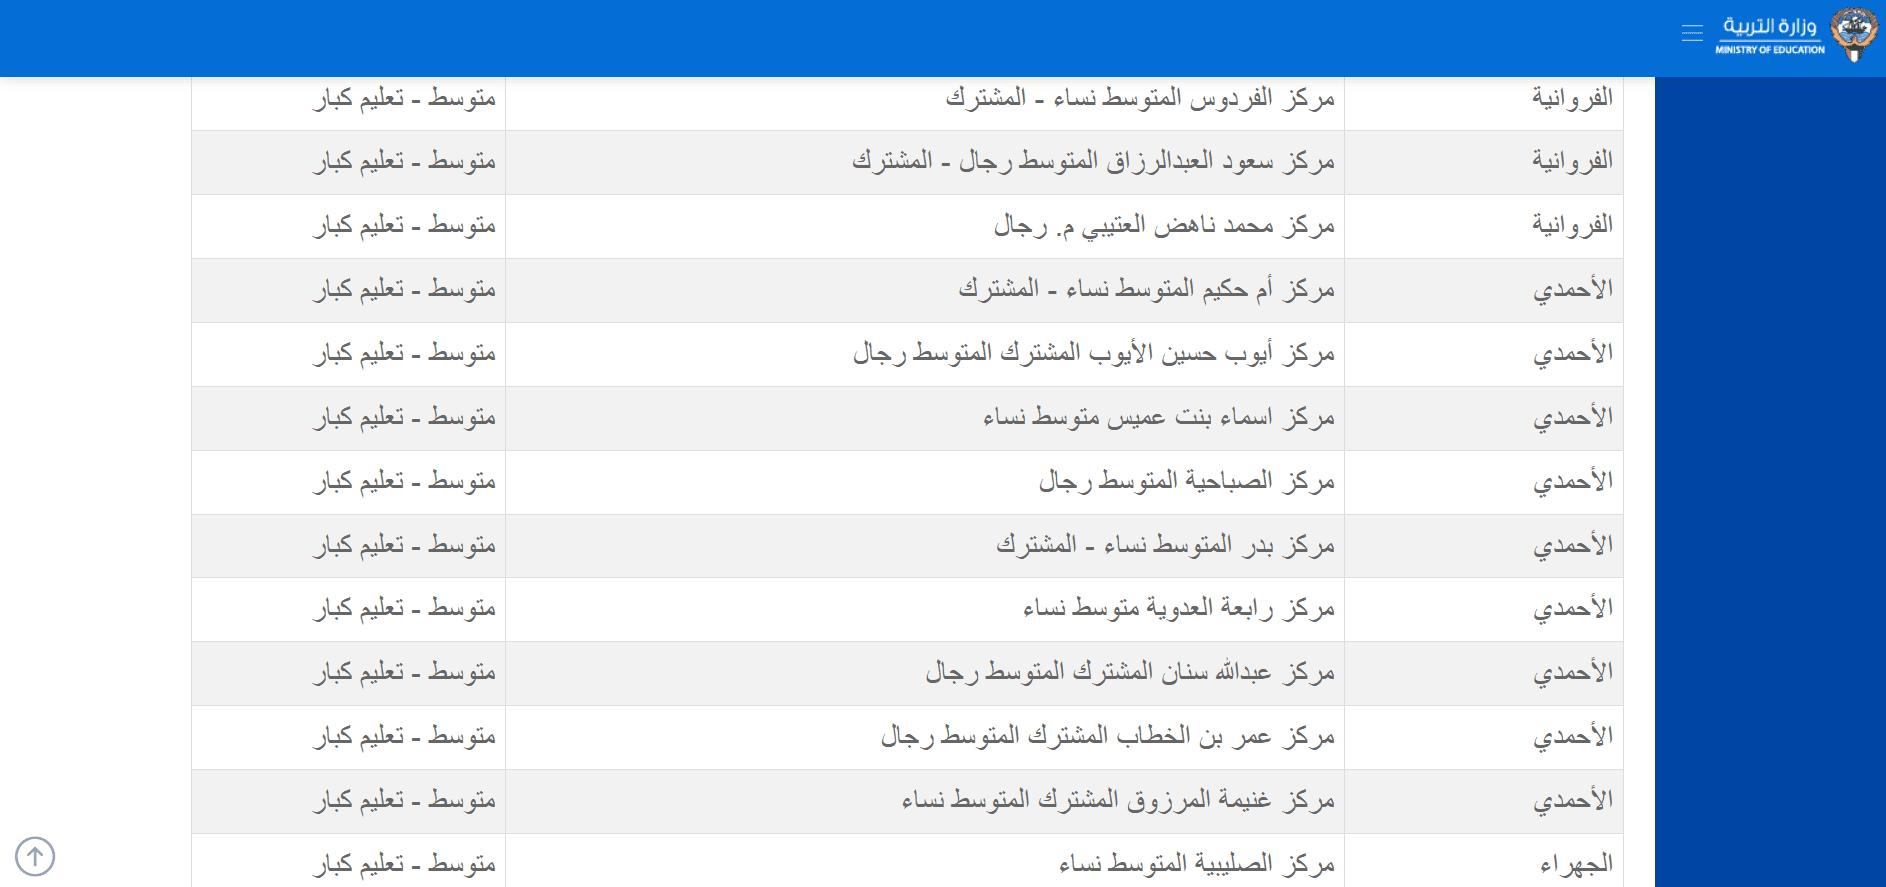 المدارس التي أعلنت نتائج الطلاب 2023 الكويت حتى الآن